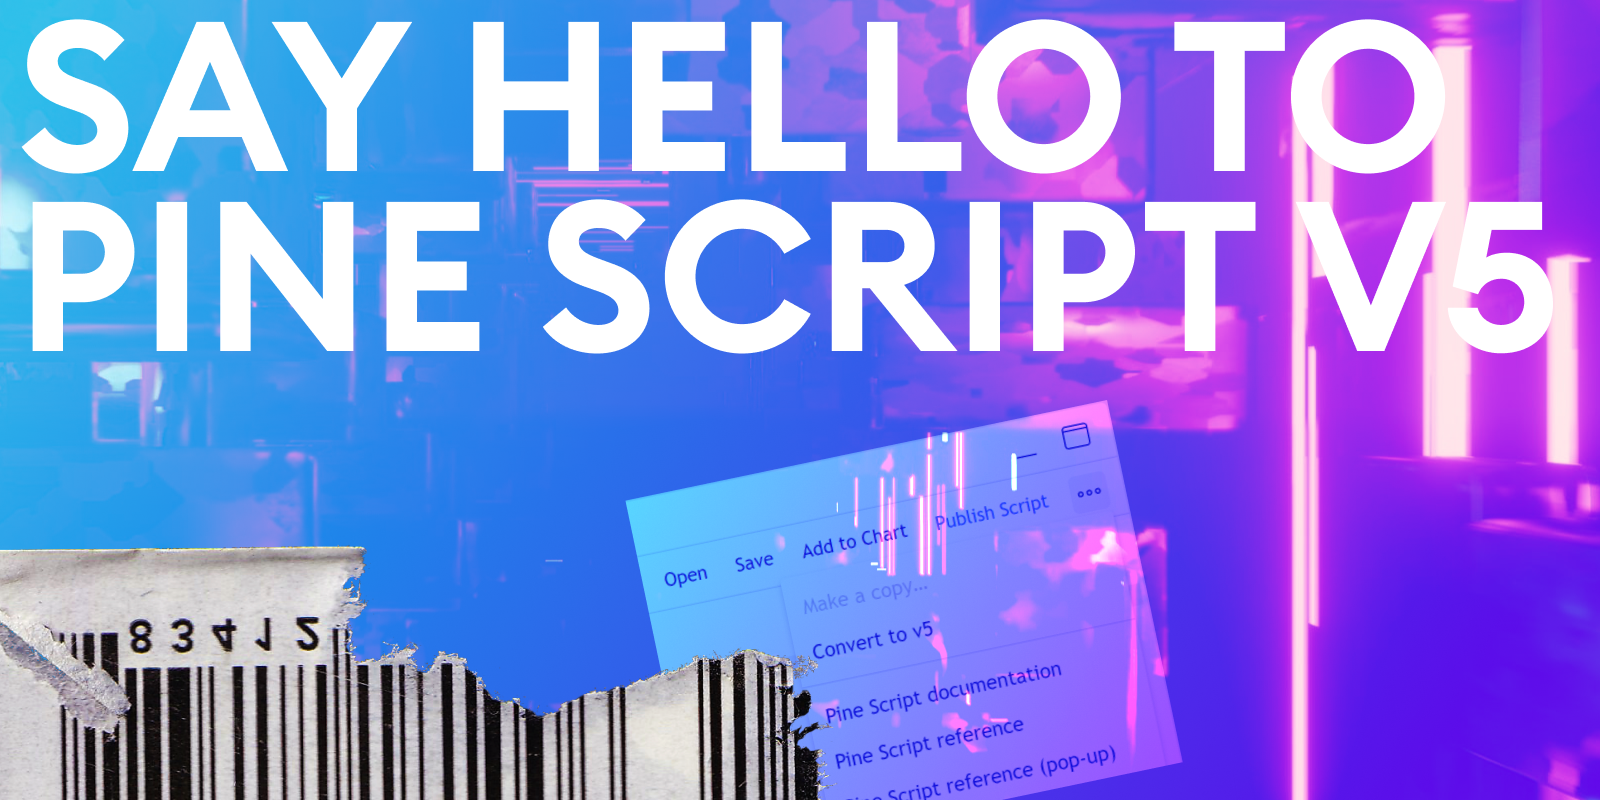 Sig hej til Pine Script® v5 – Pine Script®